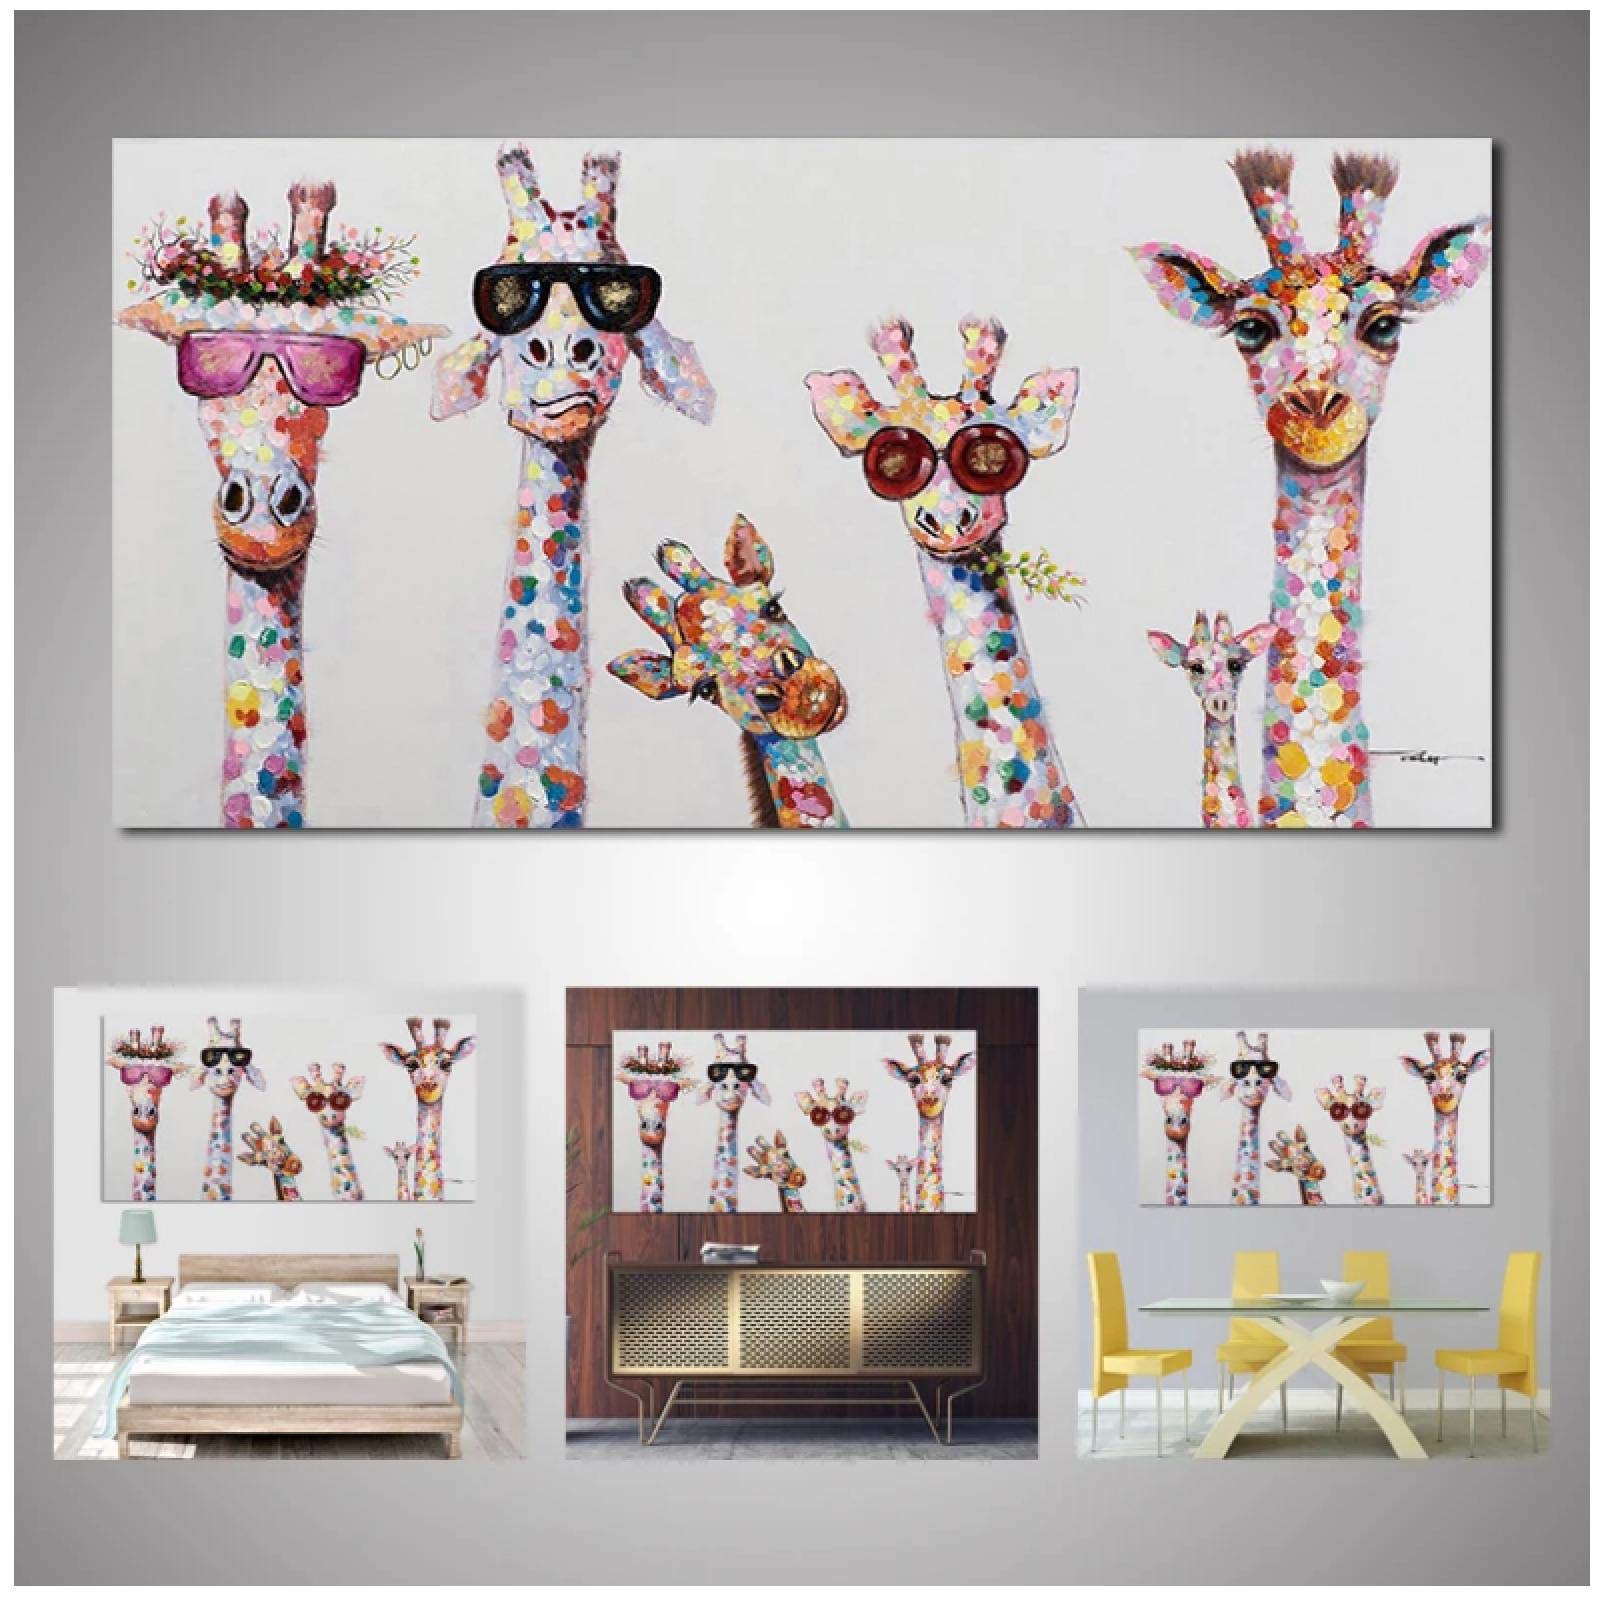 Nativeemie Druck auf Leinwand Malerei Künstlerische Farbe Giraffe Poster und Druck Wandkunst Bild für Wohnzimmer Home Decoration 50x110cm / 19,7"x 43,3" Rahmenlos